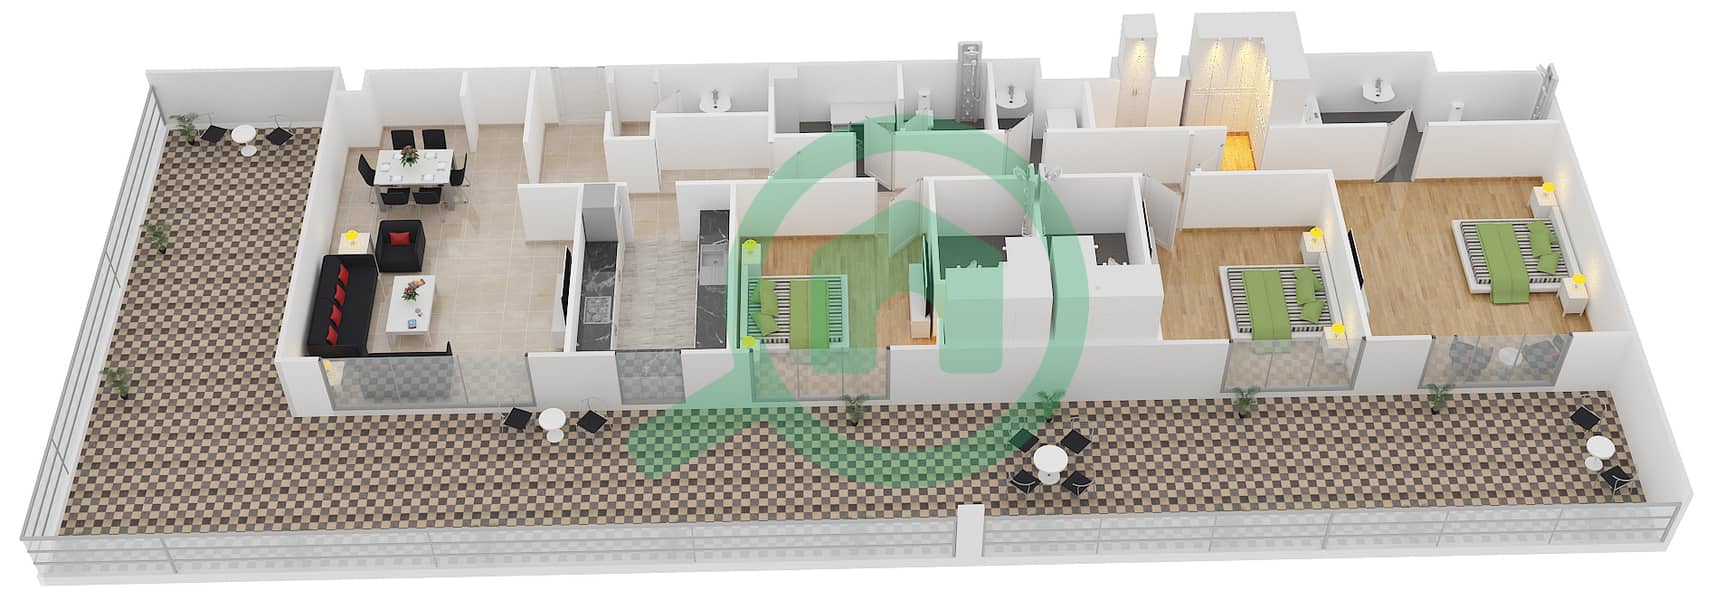 Belgravia - 3 Bedroom Apartment Type 5 Floor plan interactive3D